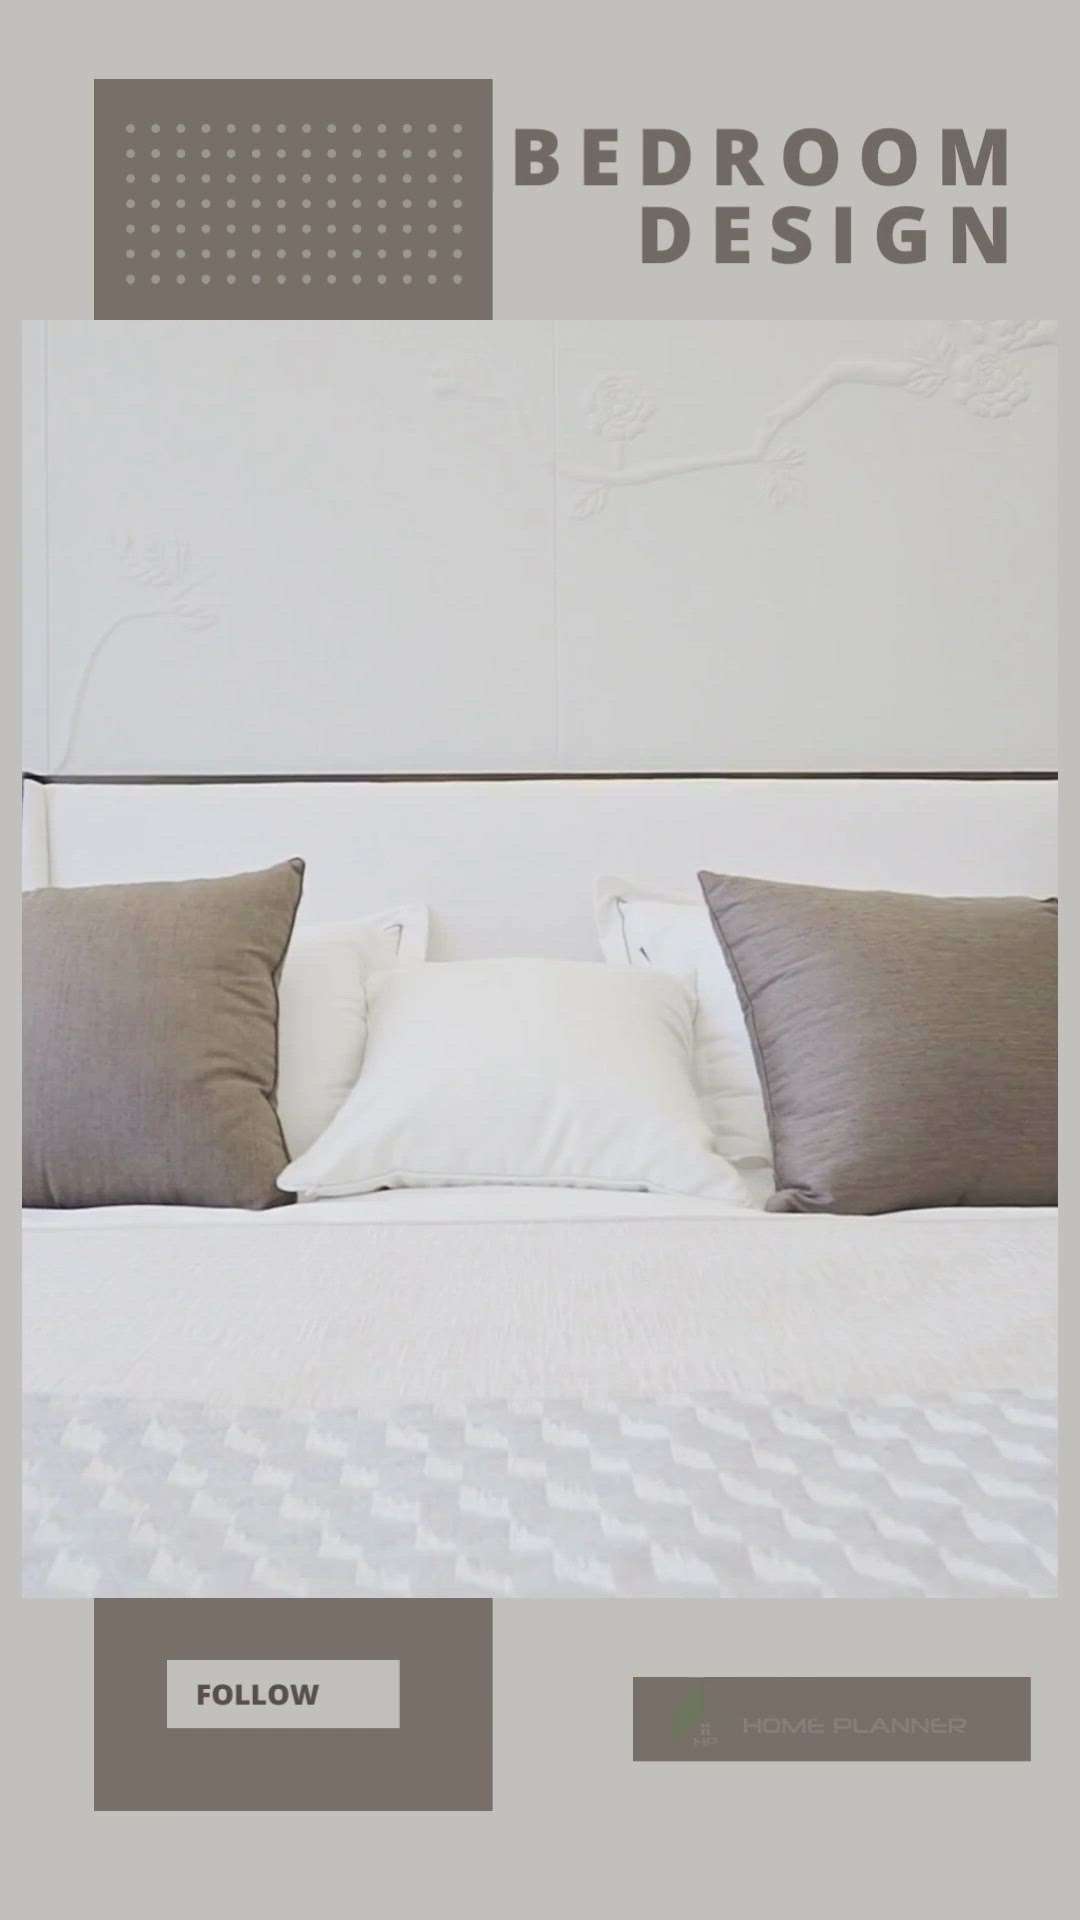 Bedroom design
#homeplanner